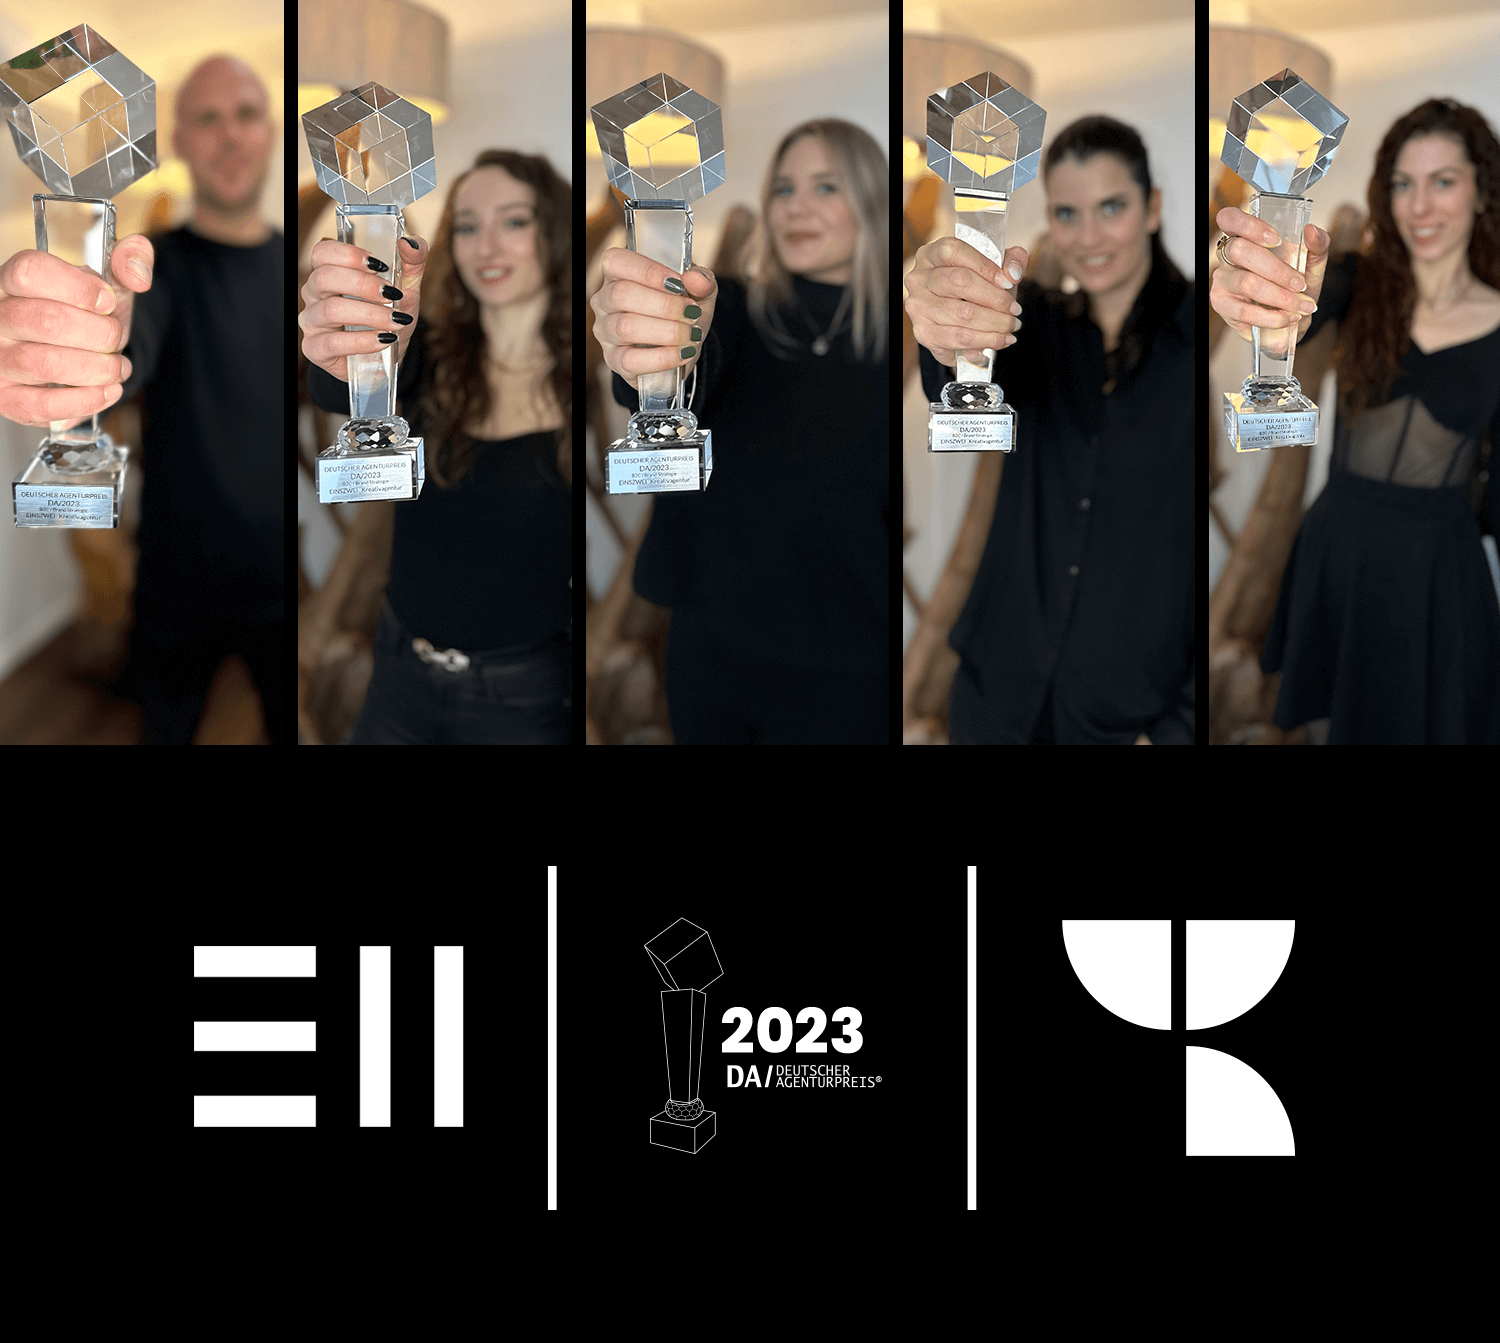 EINSZWEI - Kreativagentur ist Award Gewinner Agentur Deutscher Agenturpreis 2023